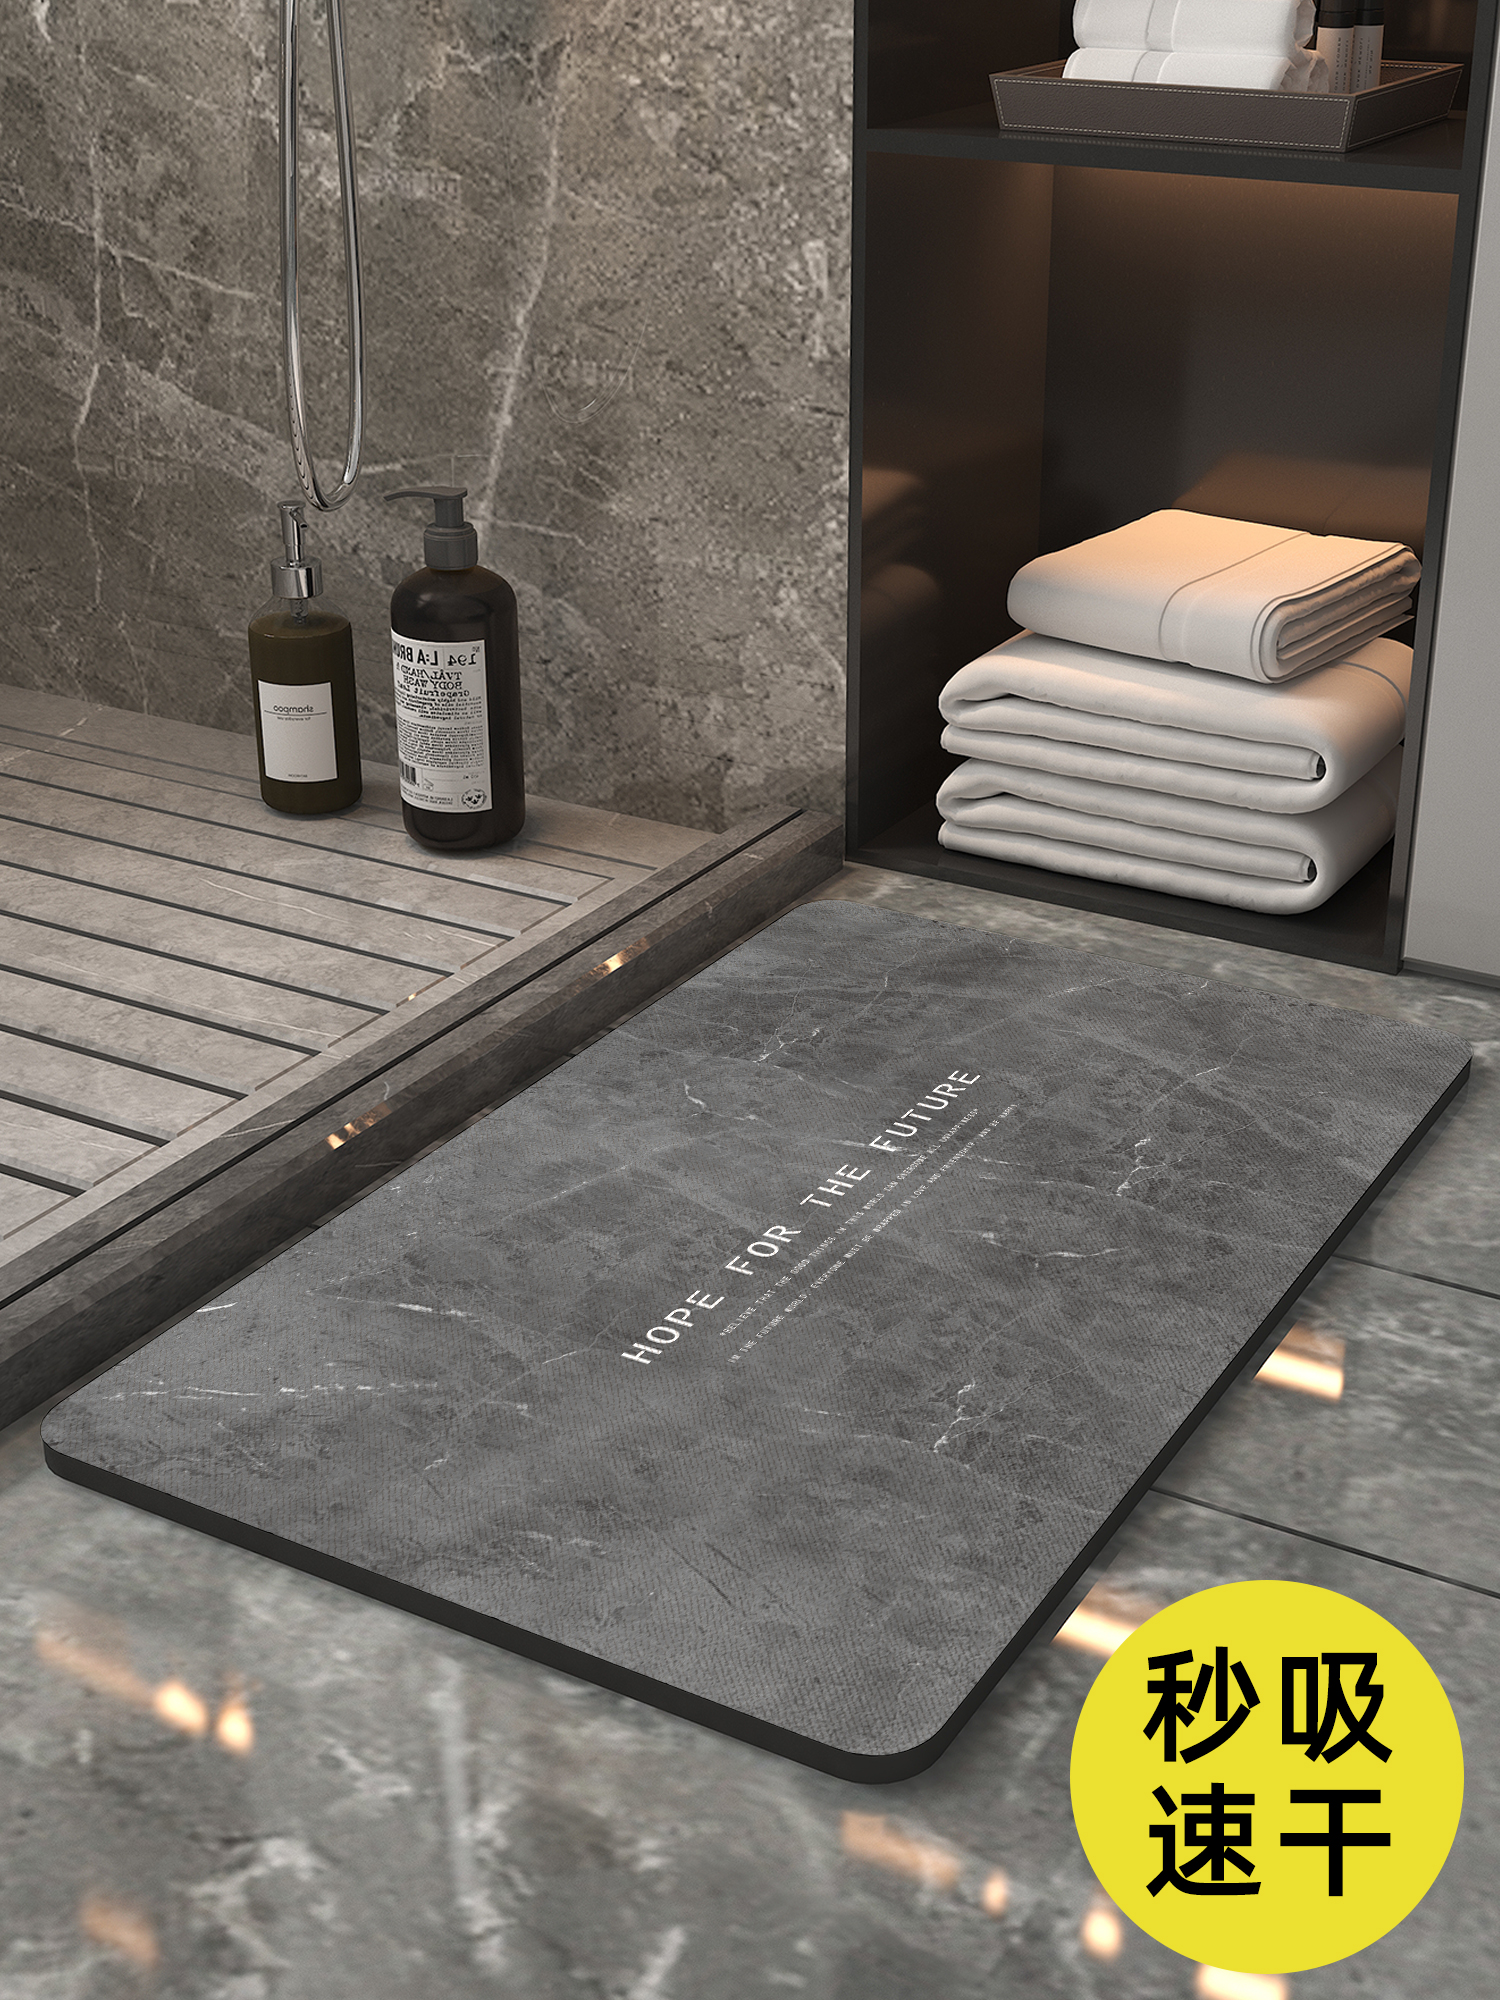 衛浴地墊珪藻土超吸水加厚40mm防滑耐用多色多款式可選適用於衛生間浴室廚房